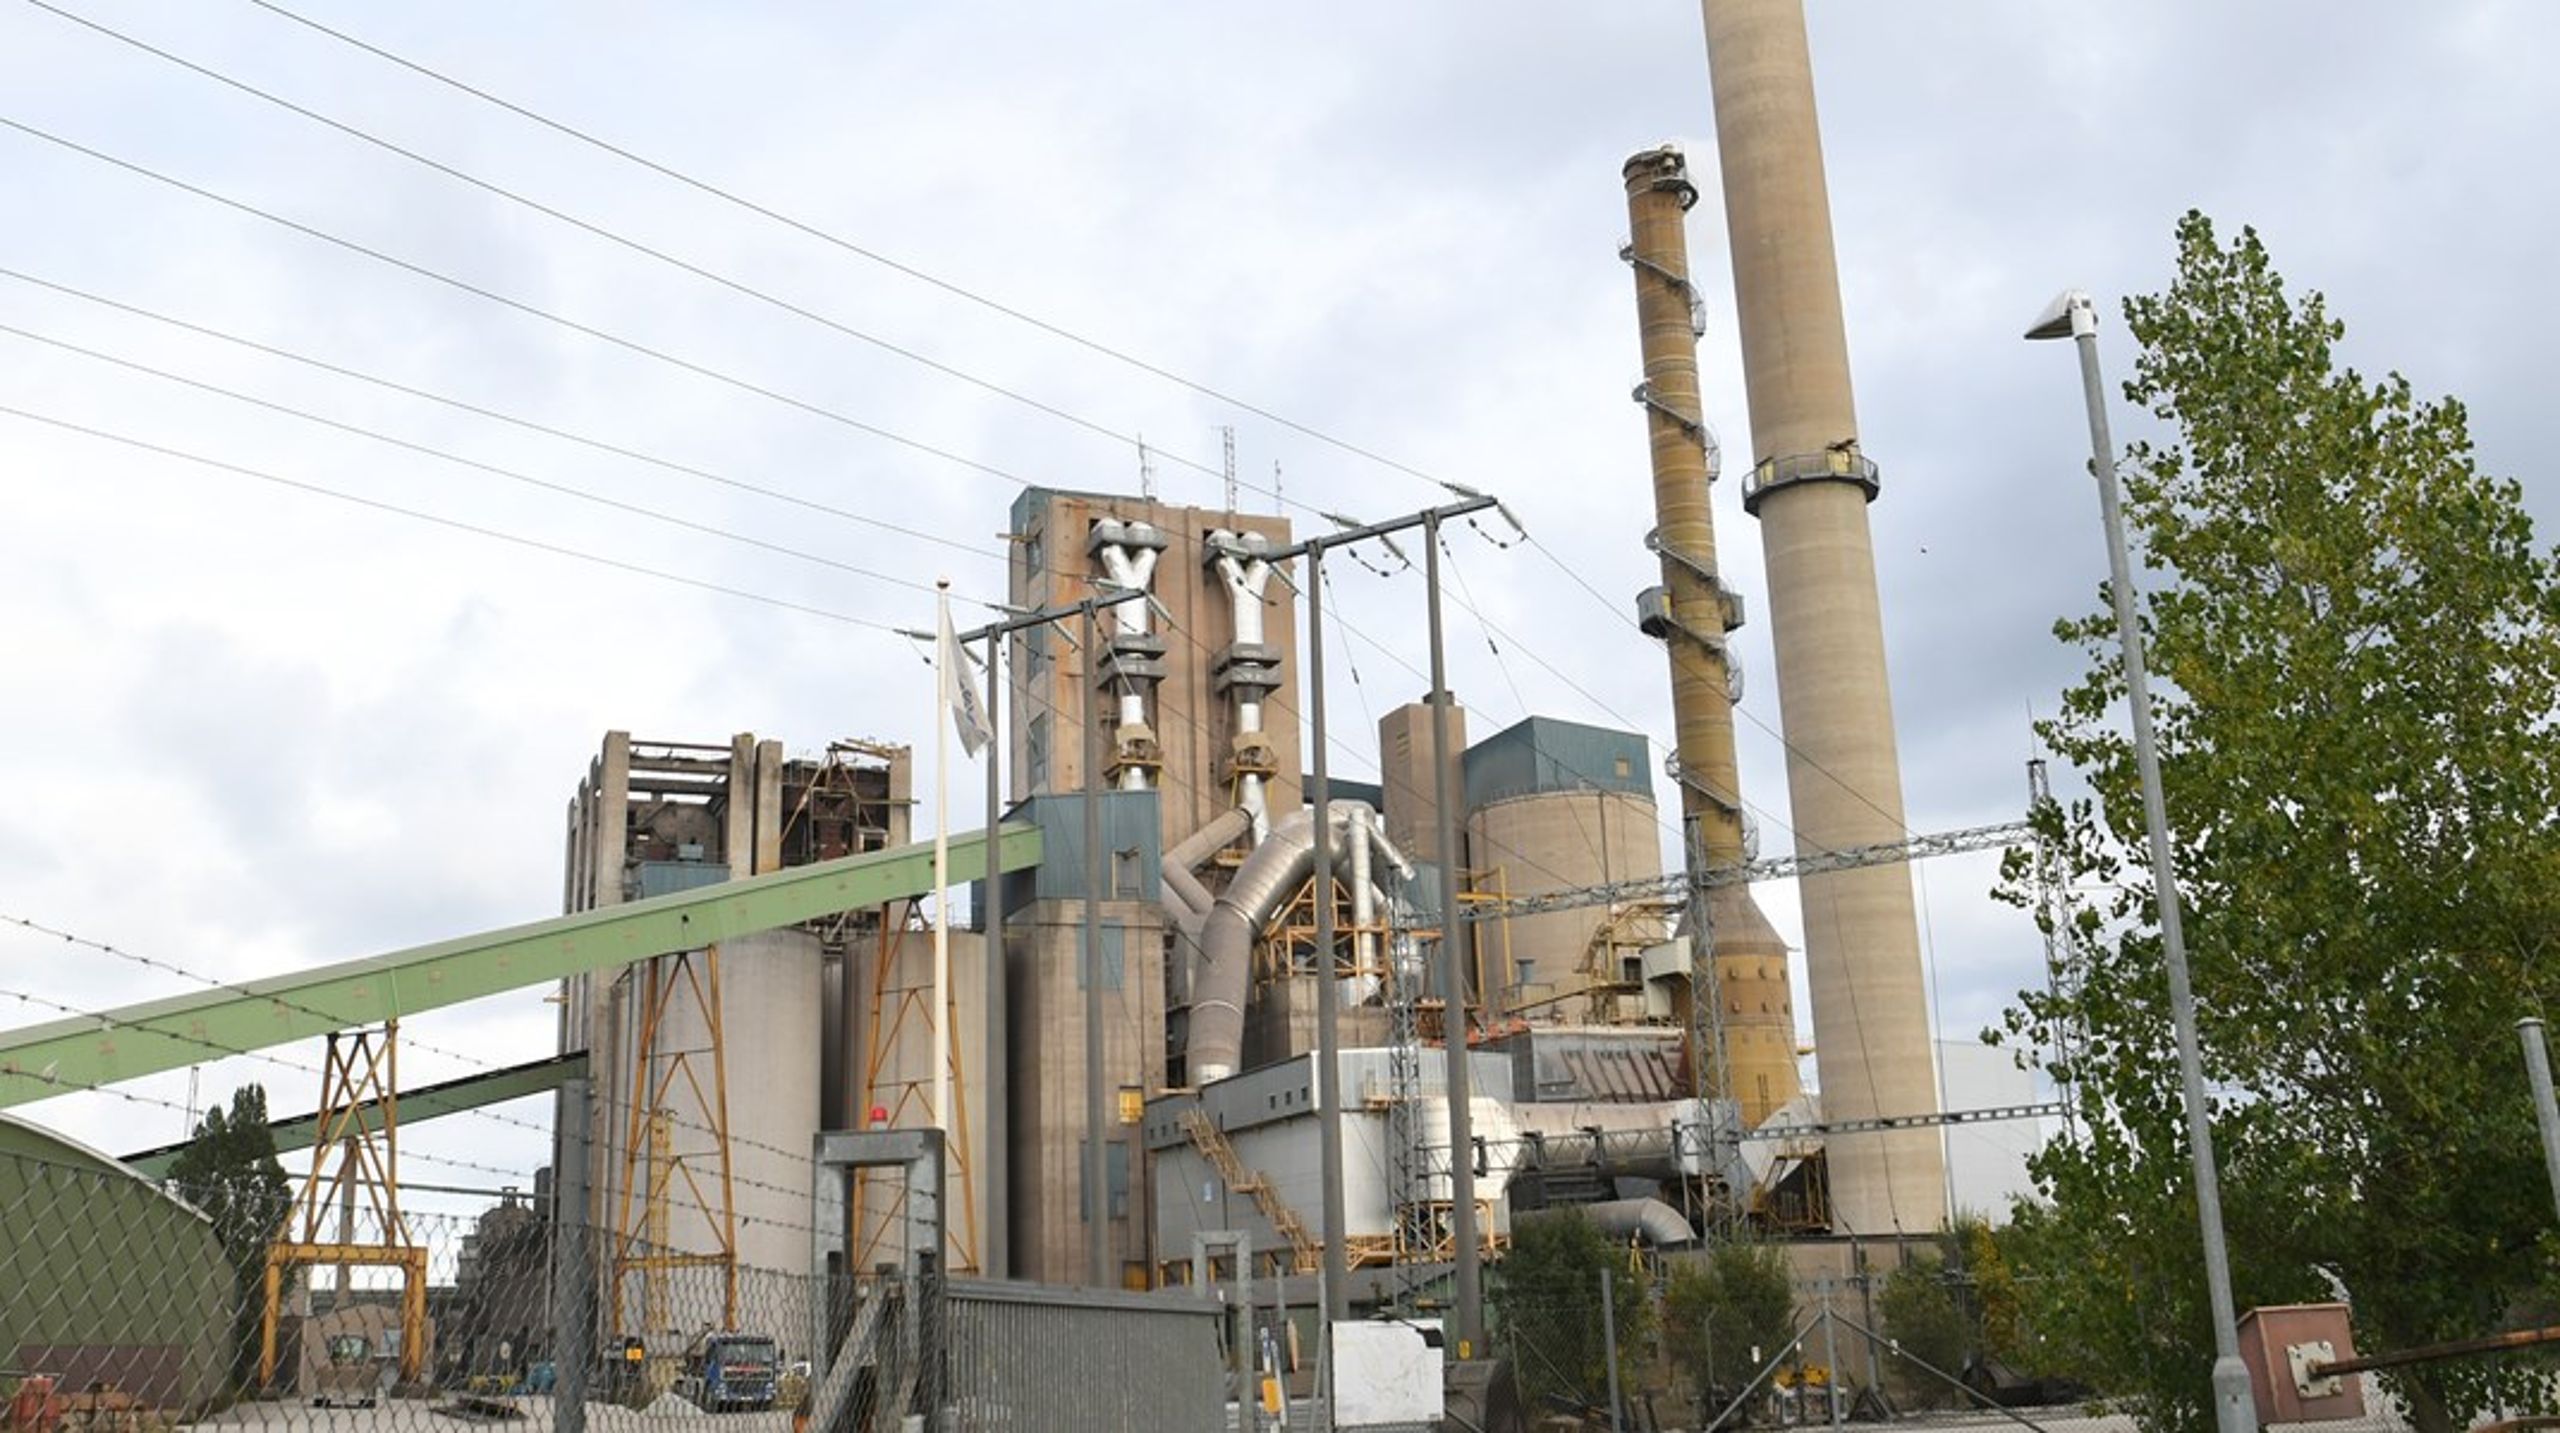 Miljöprövningen av Cementas fabrik är ett av de mest uppmärksammade fallen gällande miljöbalkens tillämpning.